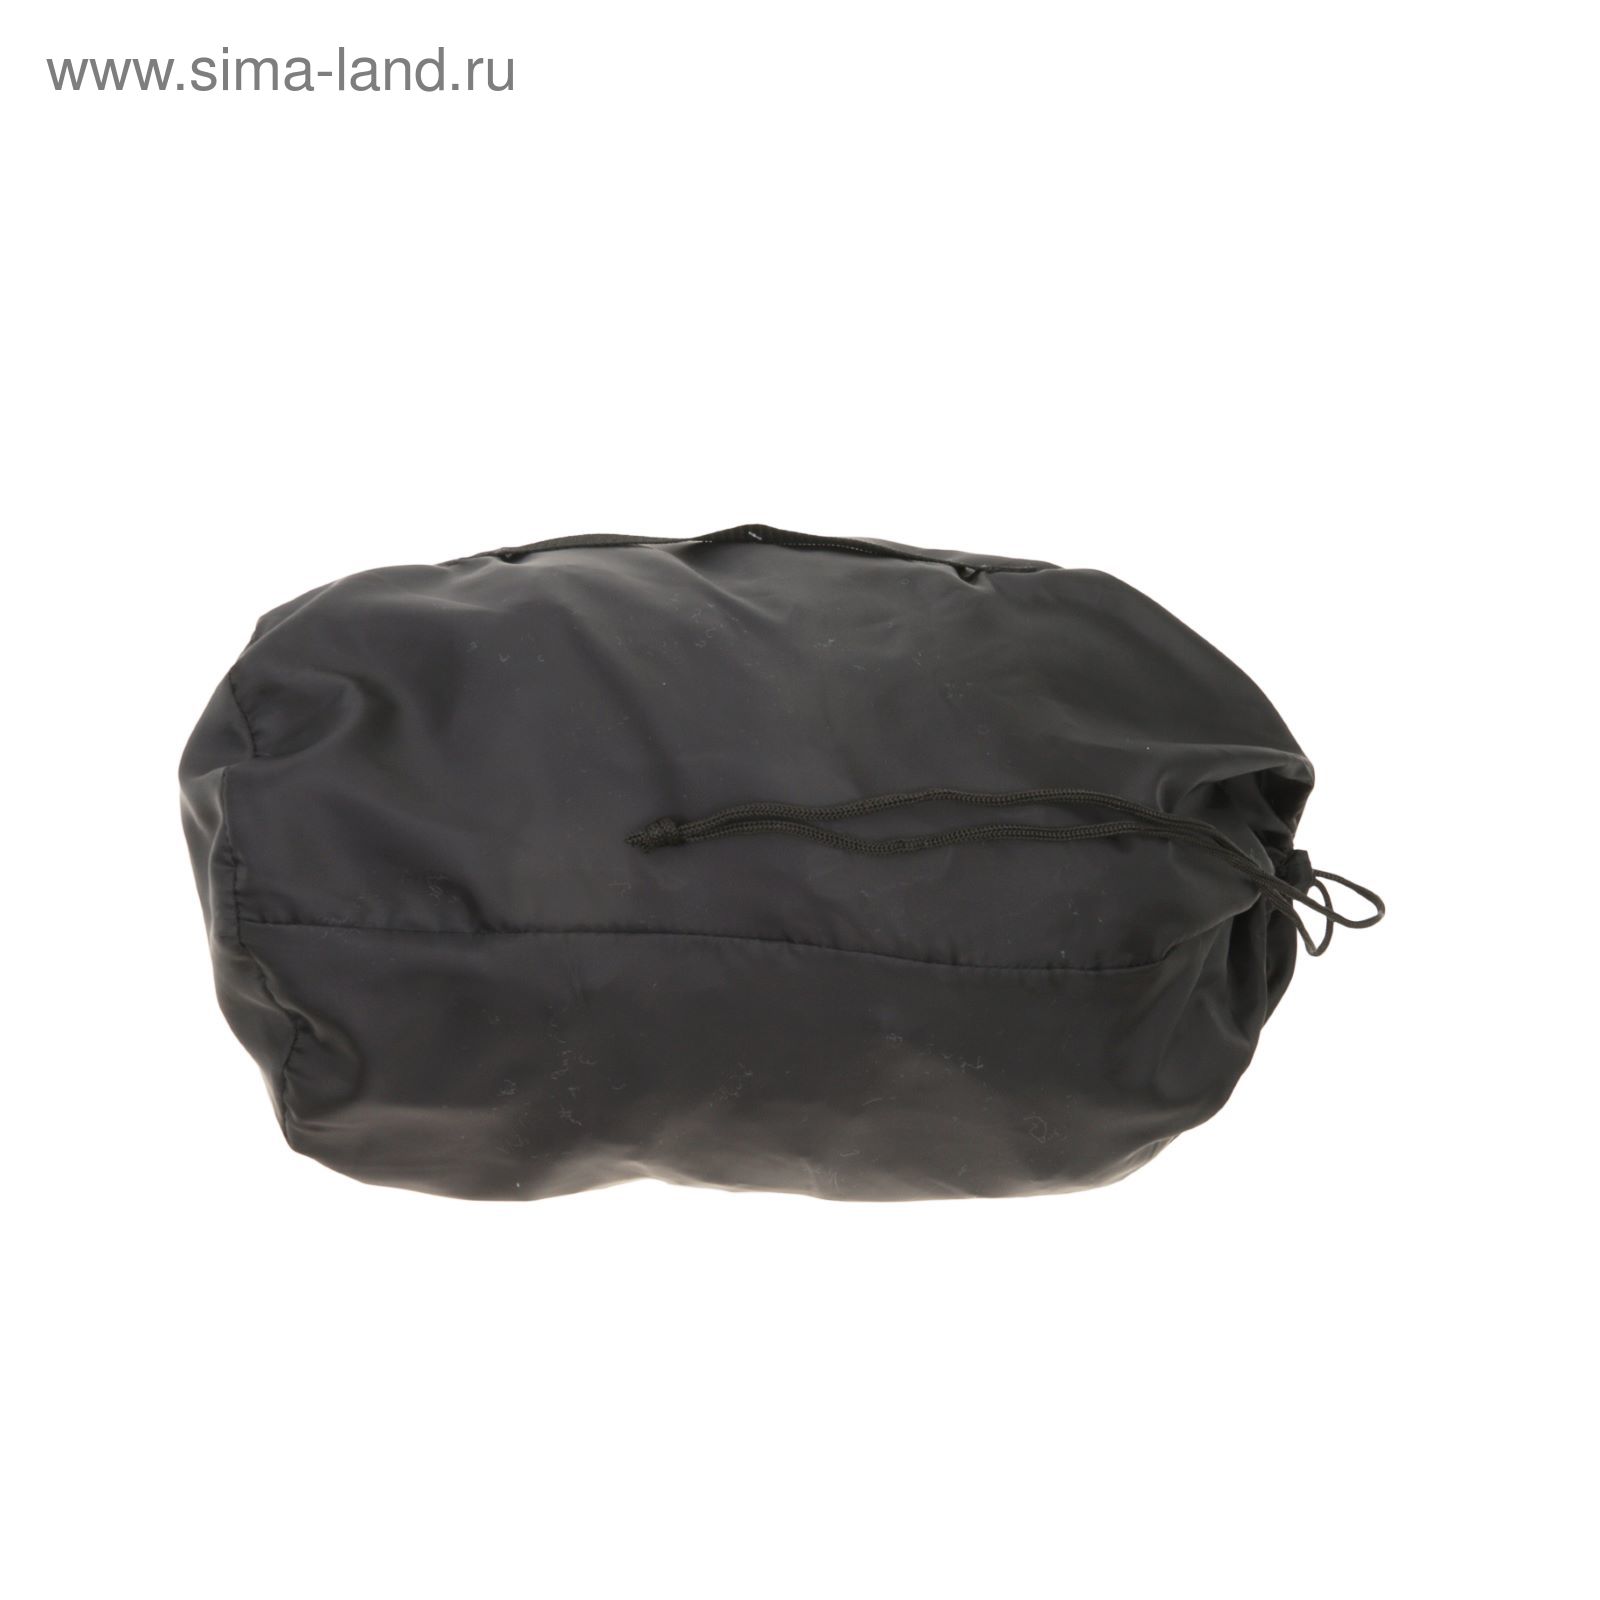 Спальный мешок-кокон "Комфорт", 4-х слойный, размер 210 х 70 см, цвет микс